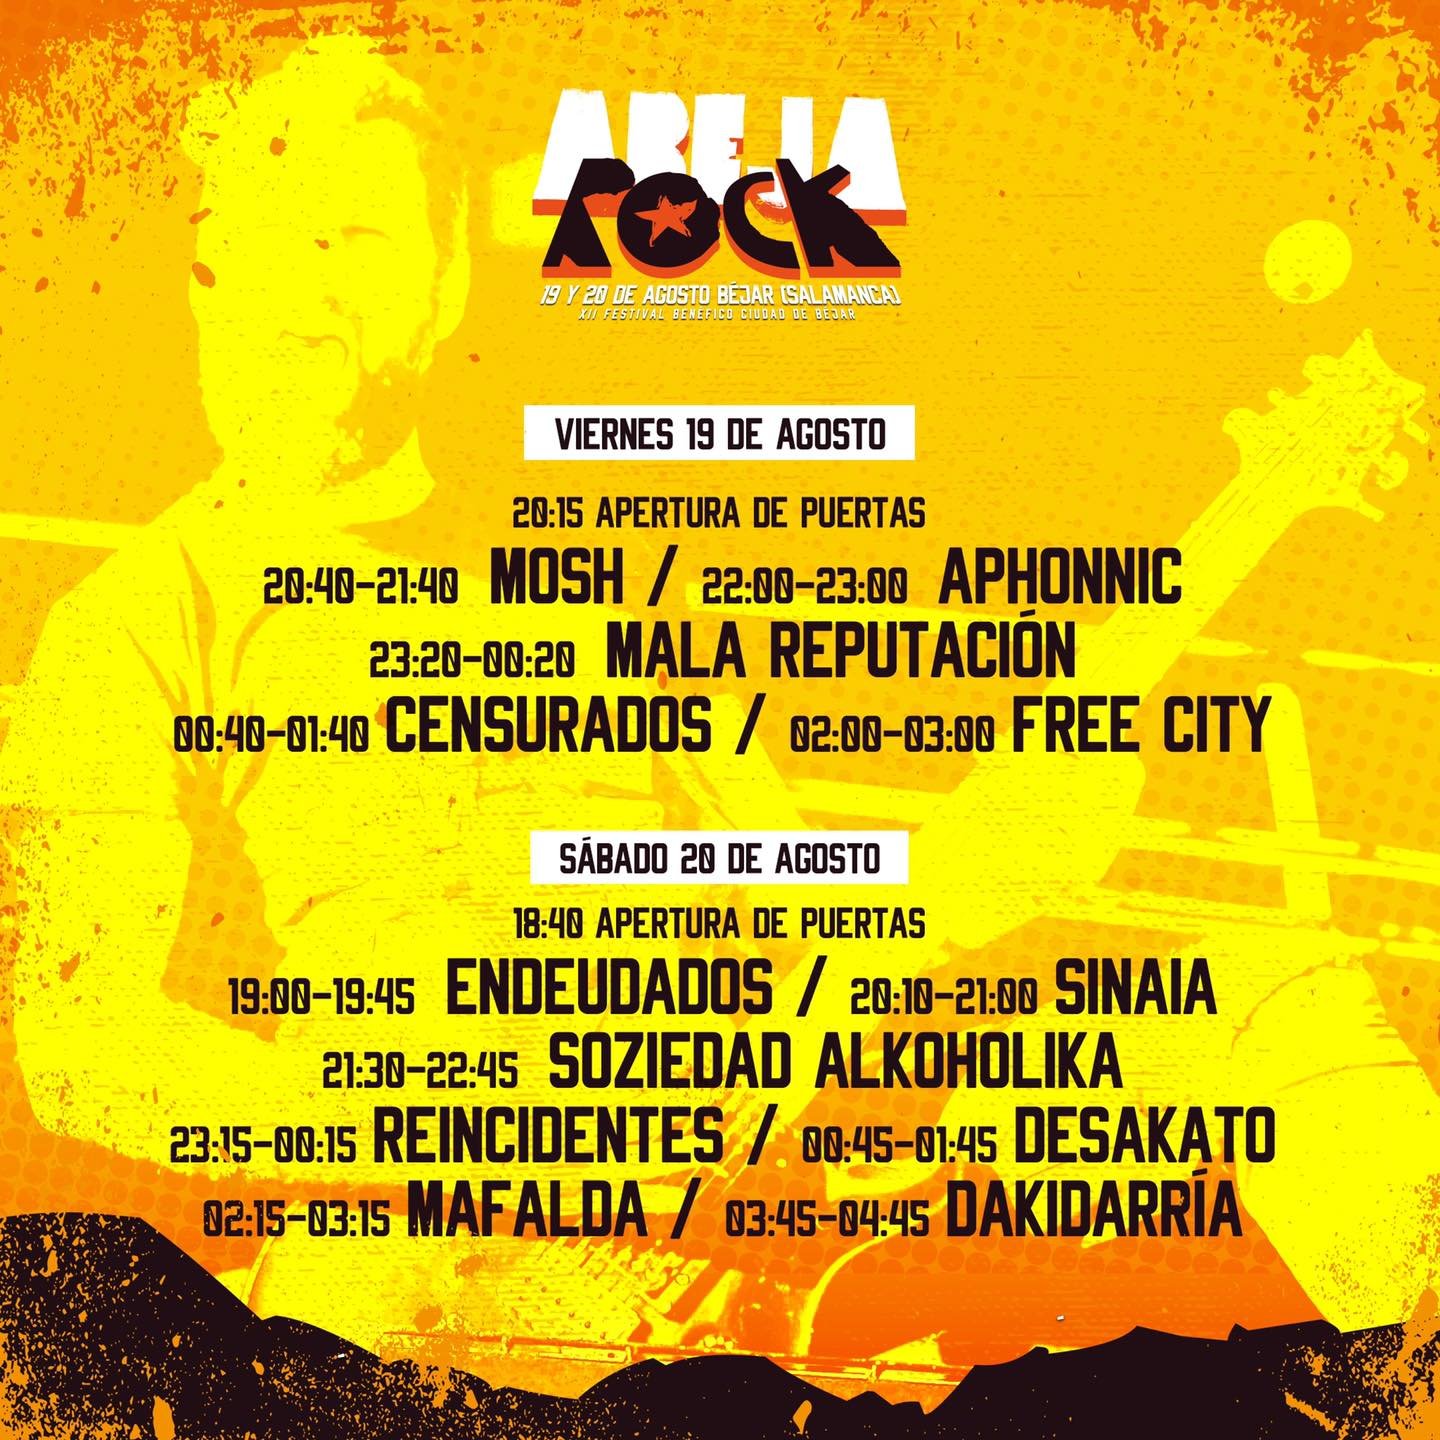 AbejaRock 2022 en AbejaRock (Bejar) el 19 Ago 2022 | Last.fm